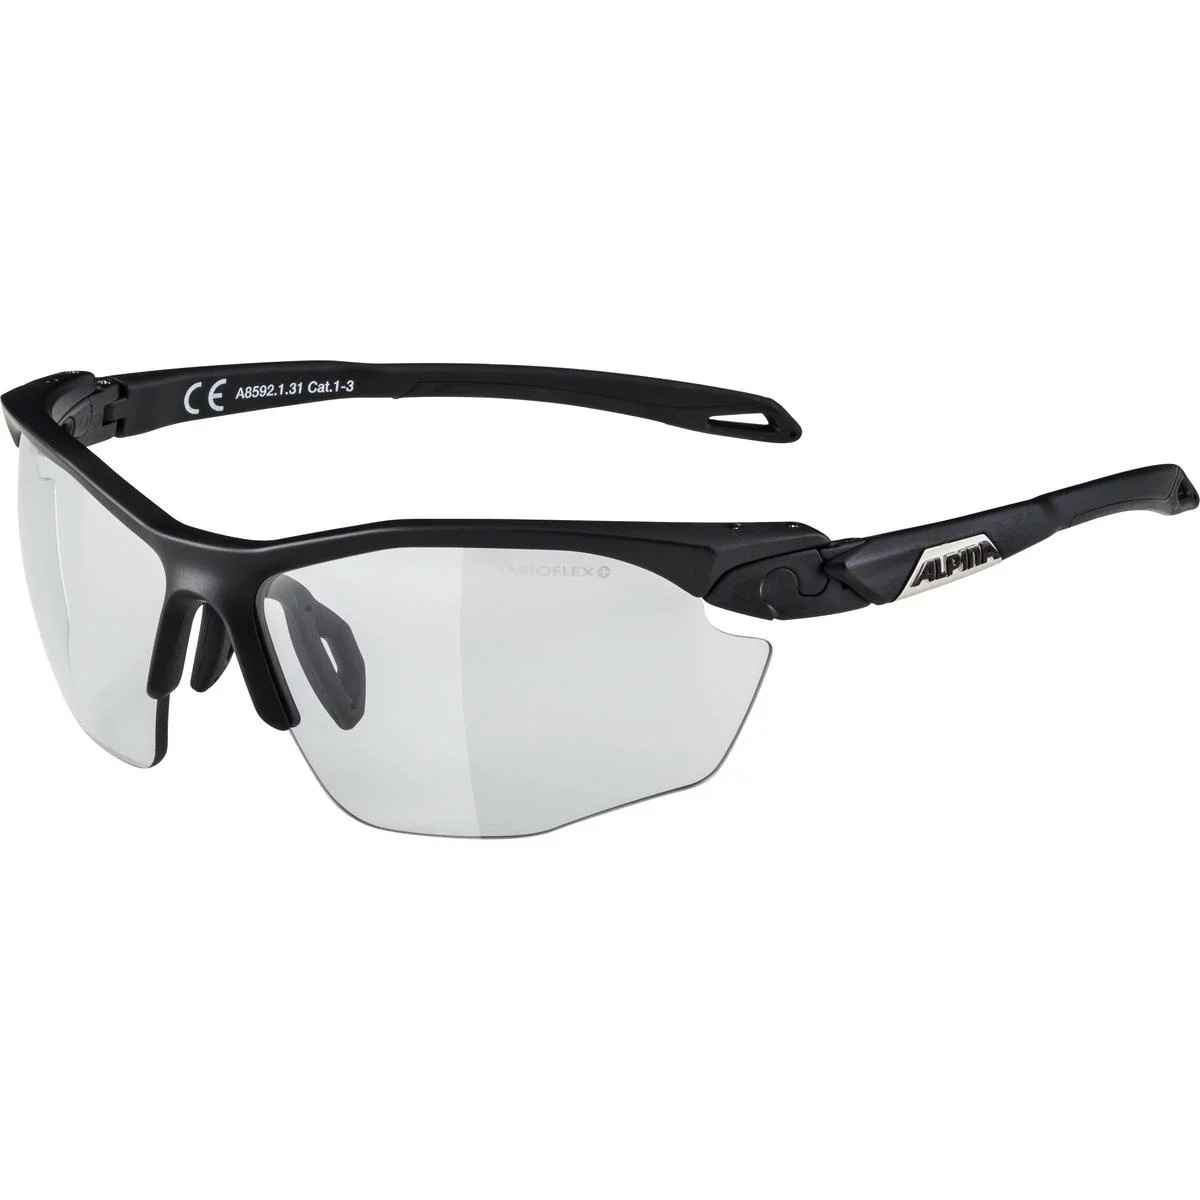 TWIST FIVE VL+ Fogstop Sportbrille mit Glas grau oder orange - Hauptansicht